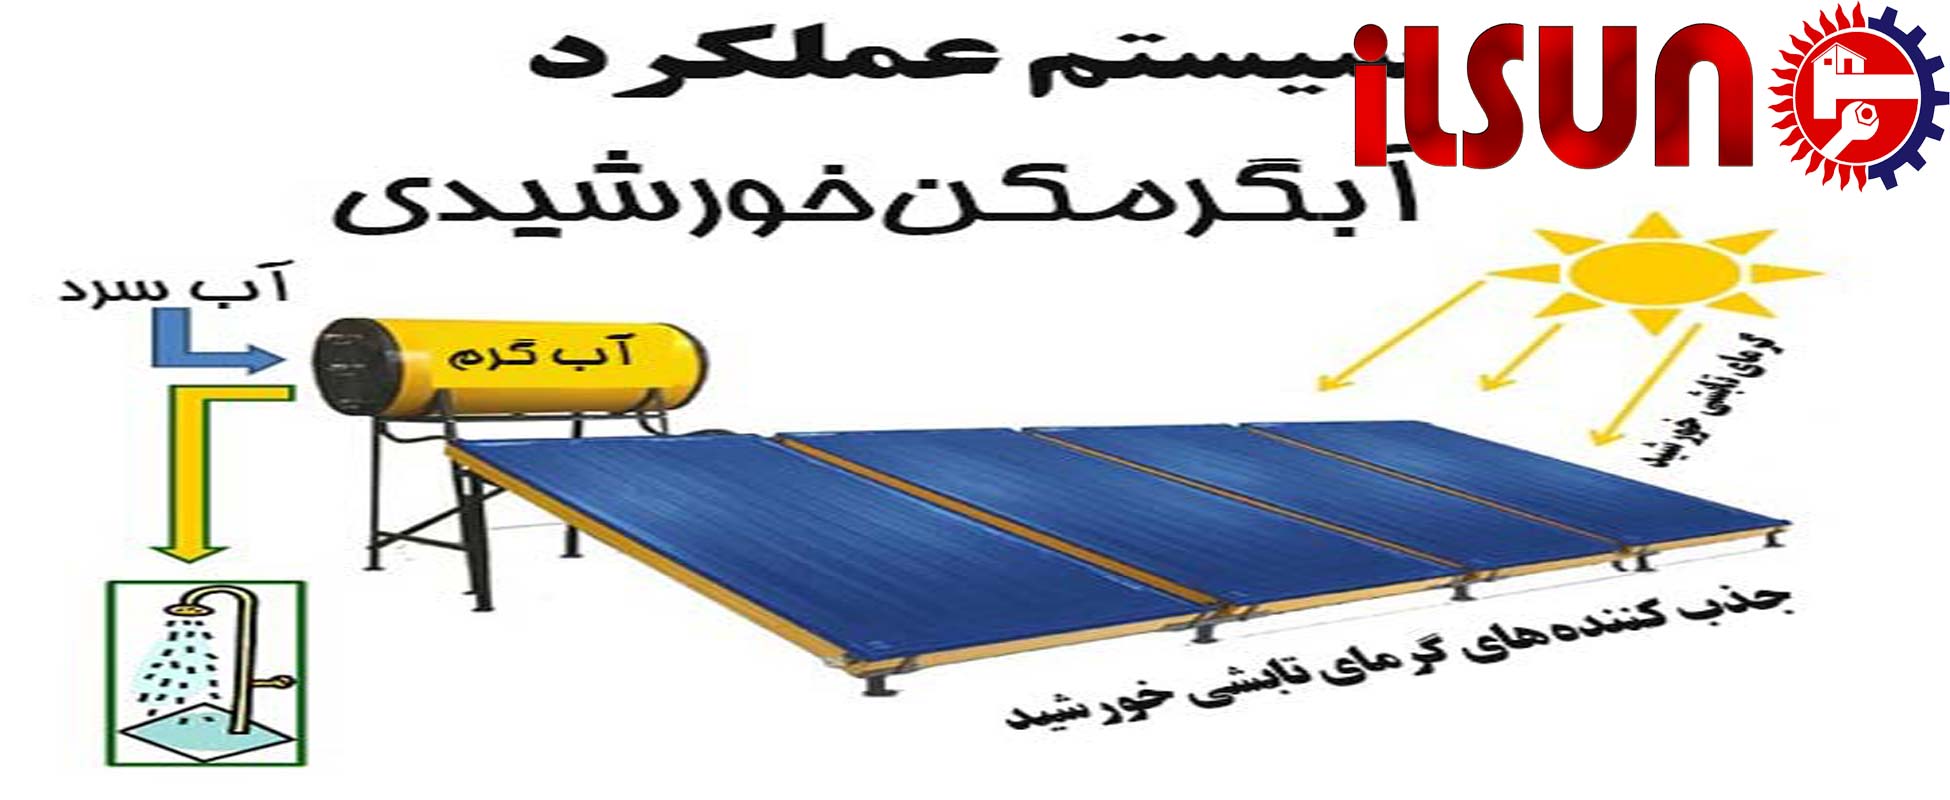 خرید آبگرمکن خورشیدی .روش های نگهداری از آبگرمکن خورشیدی